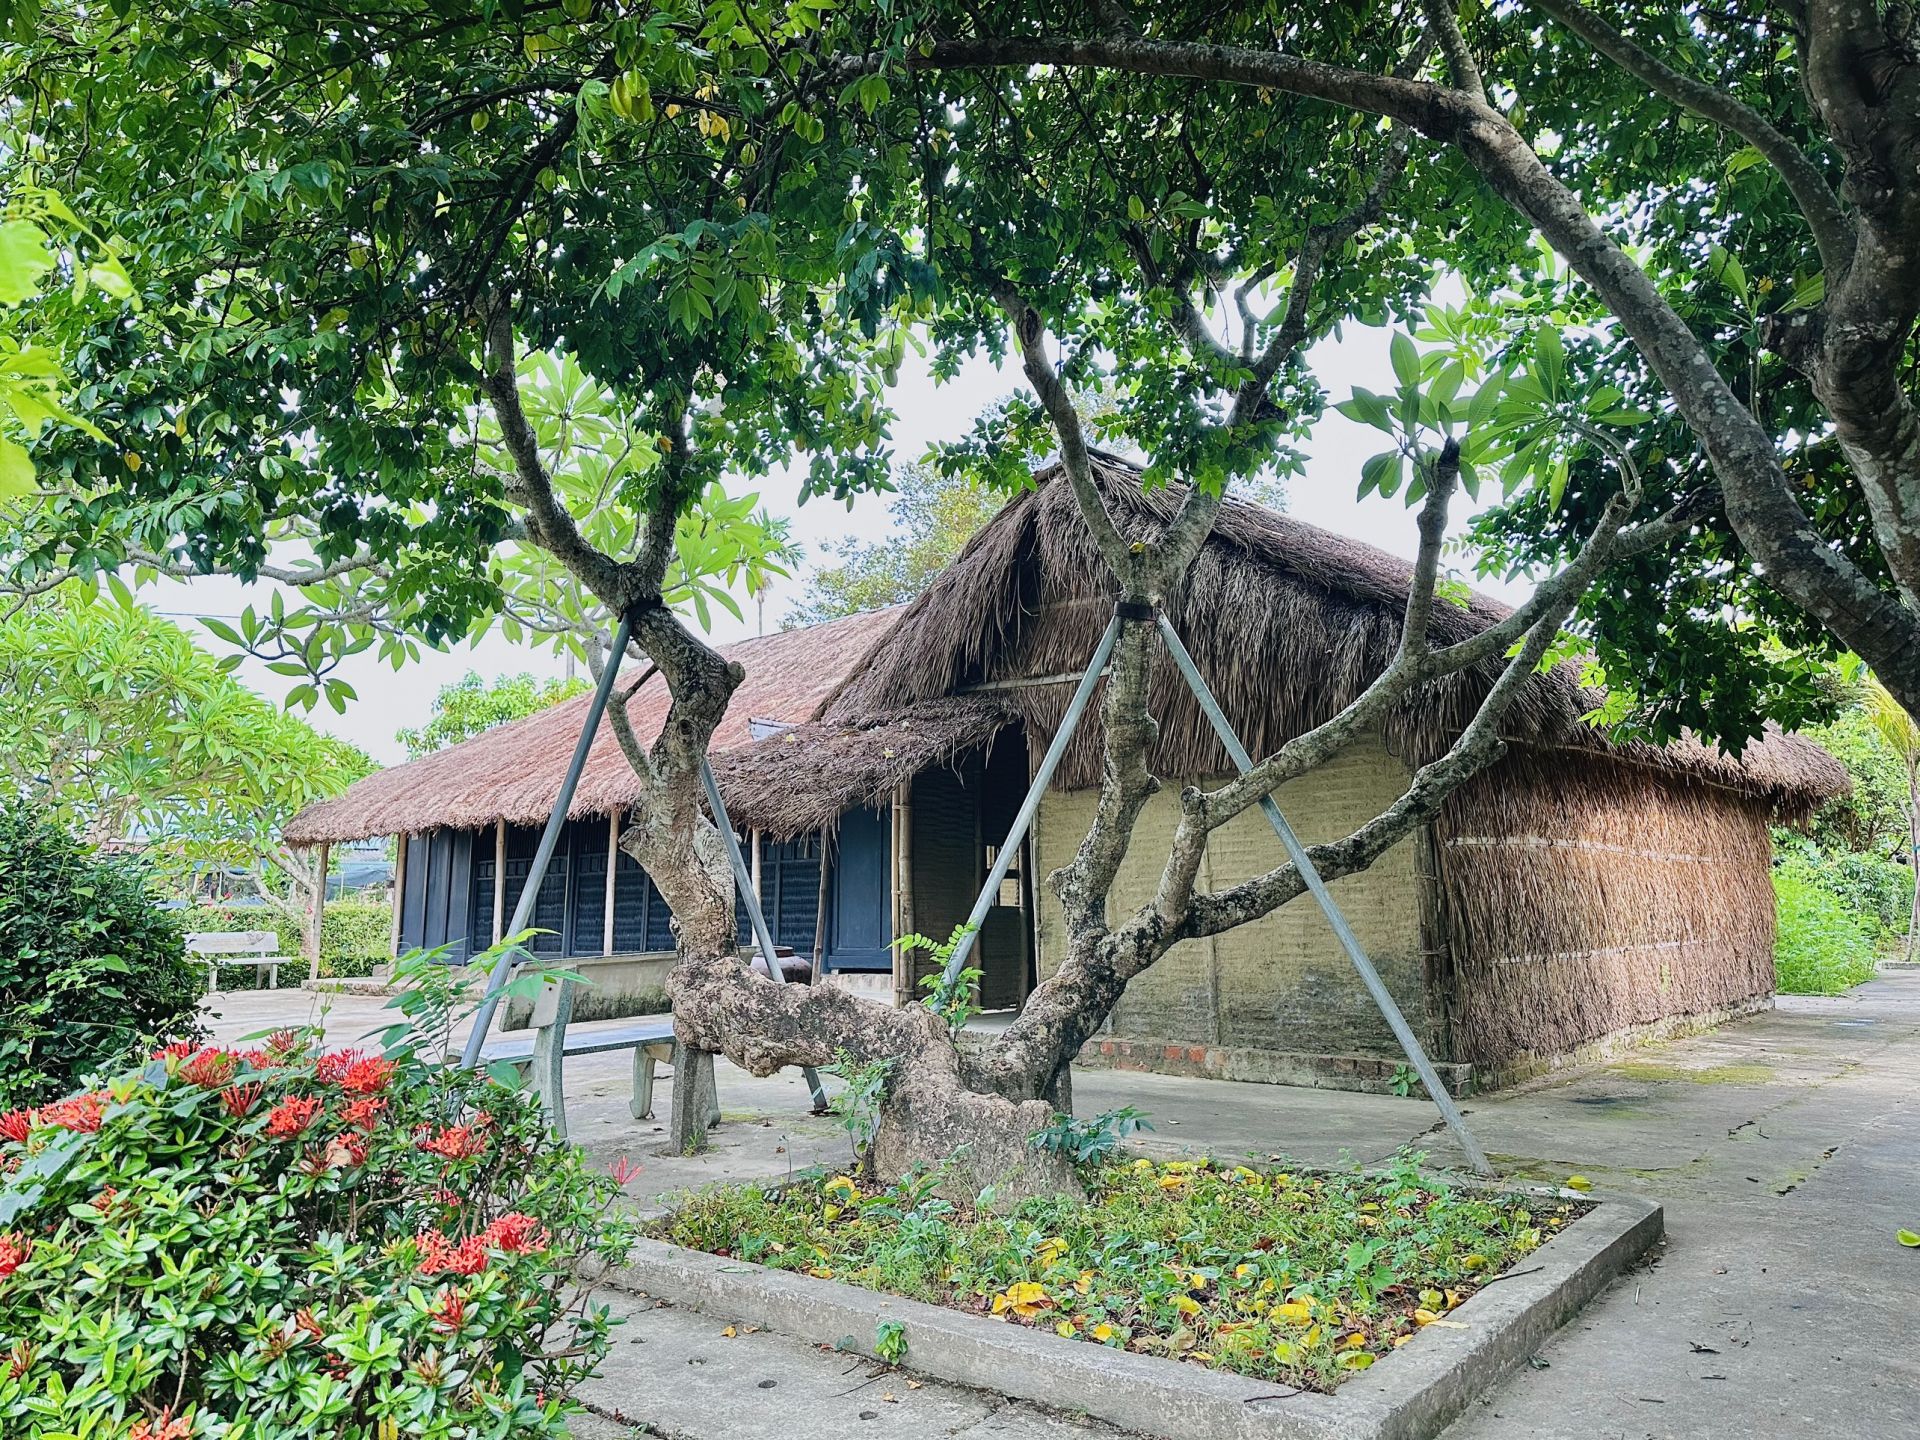 Ngôi nhà làng Dương Nỗ - nơi Bác Hồ từng sinh sống được bảo tồn và xếp hạng di tích quốc gia đặc biệt.